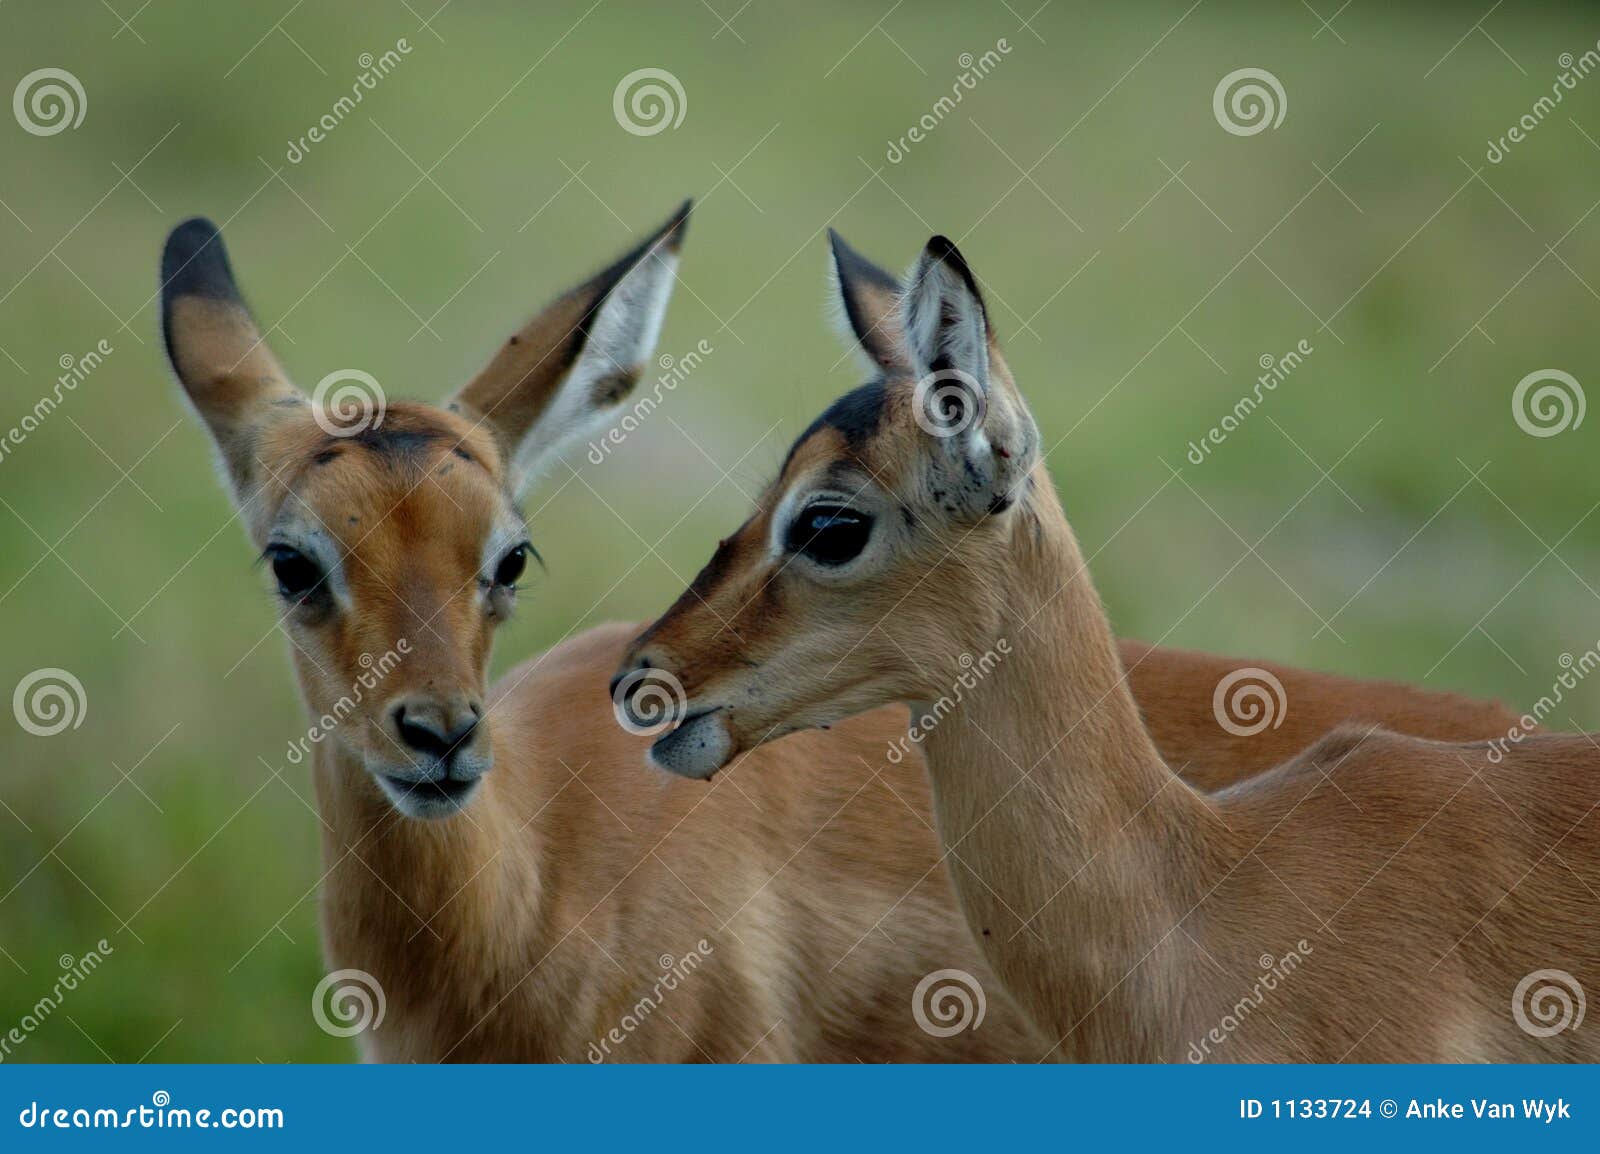 impala babies